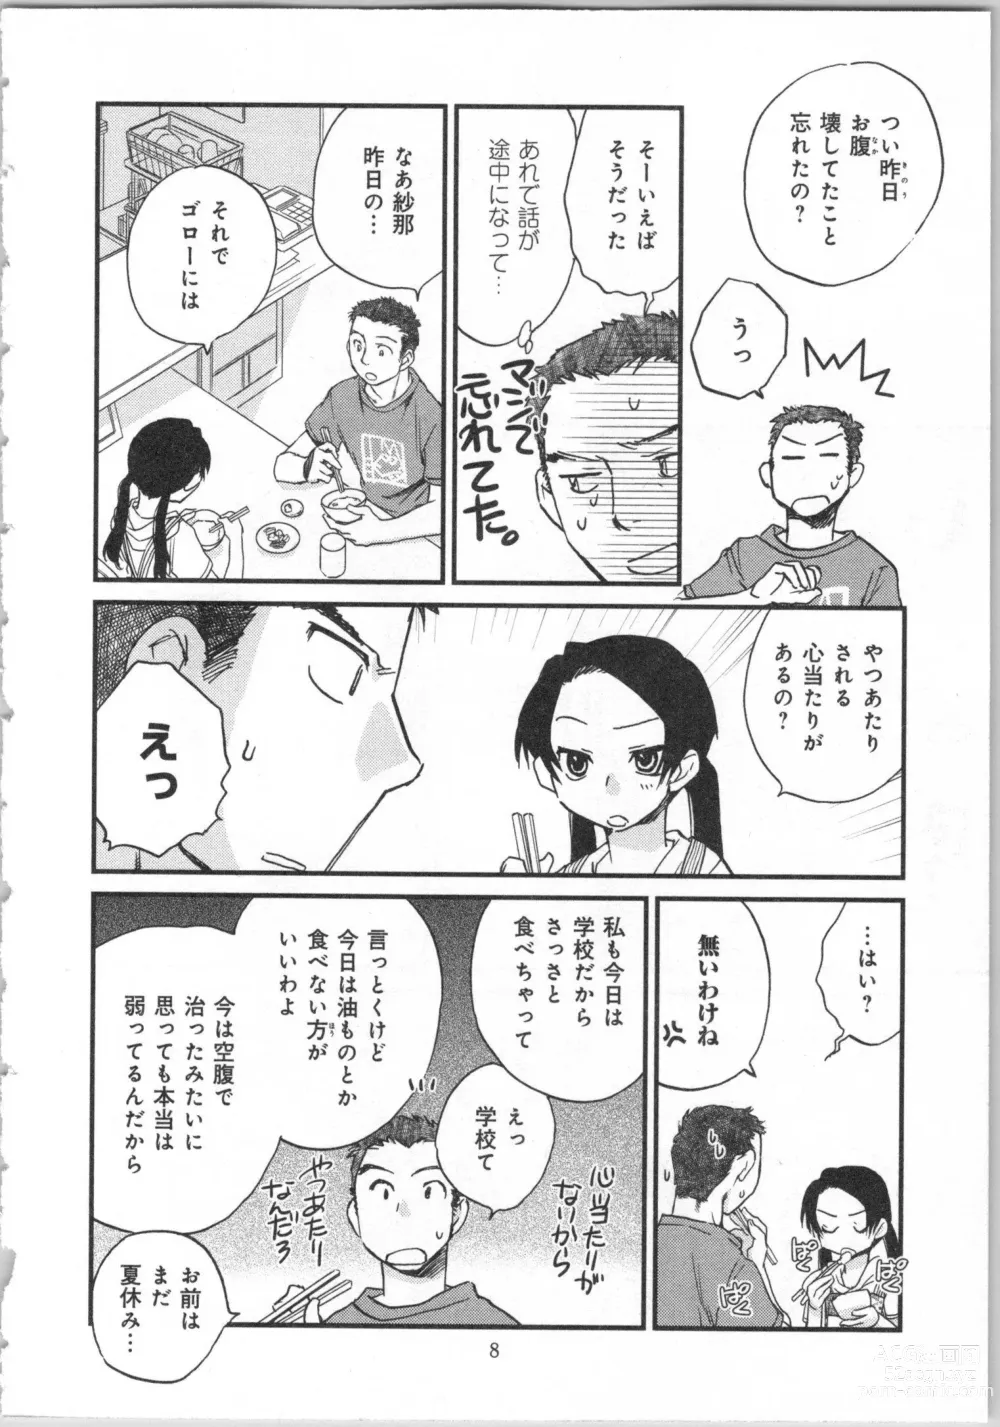 Page 10 of manga Issho ni Kurasu Tame no Yakusoku o Itsuka Vol 2